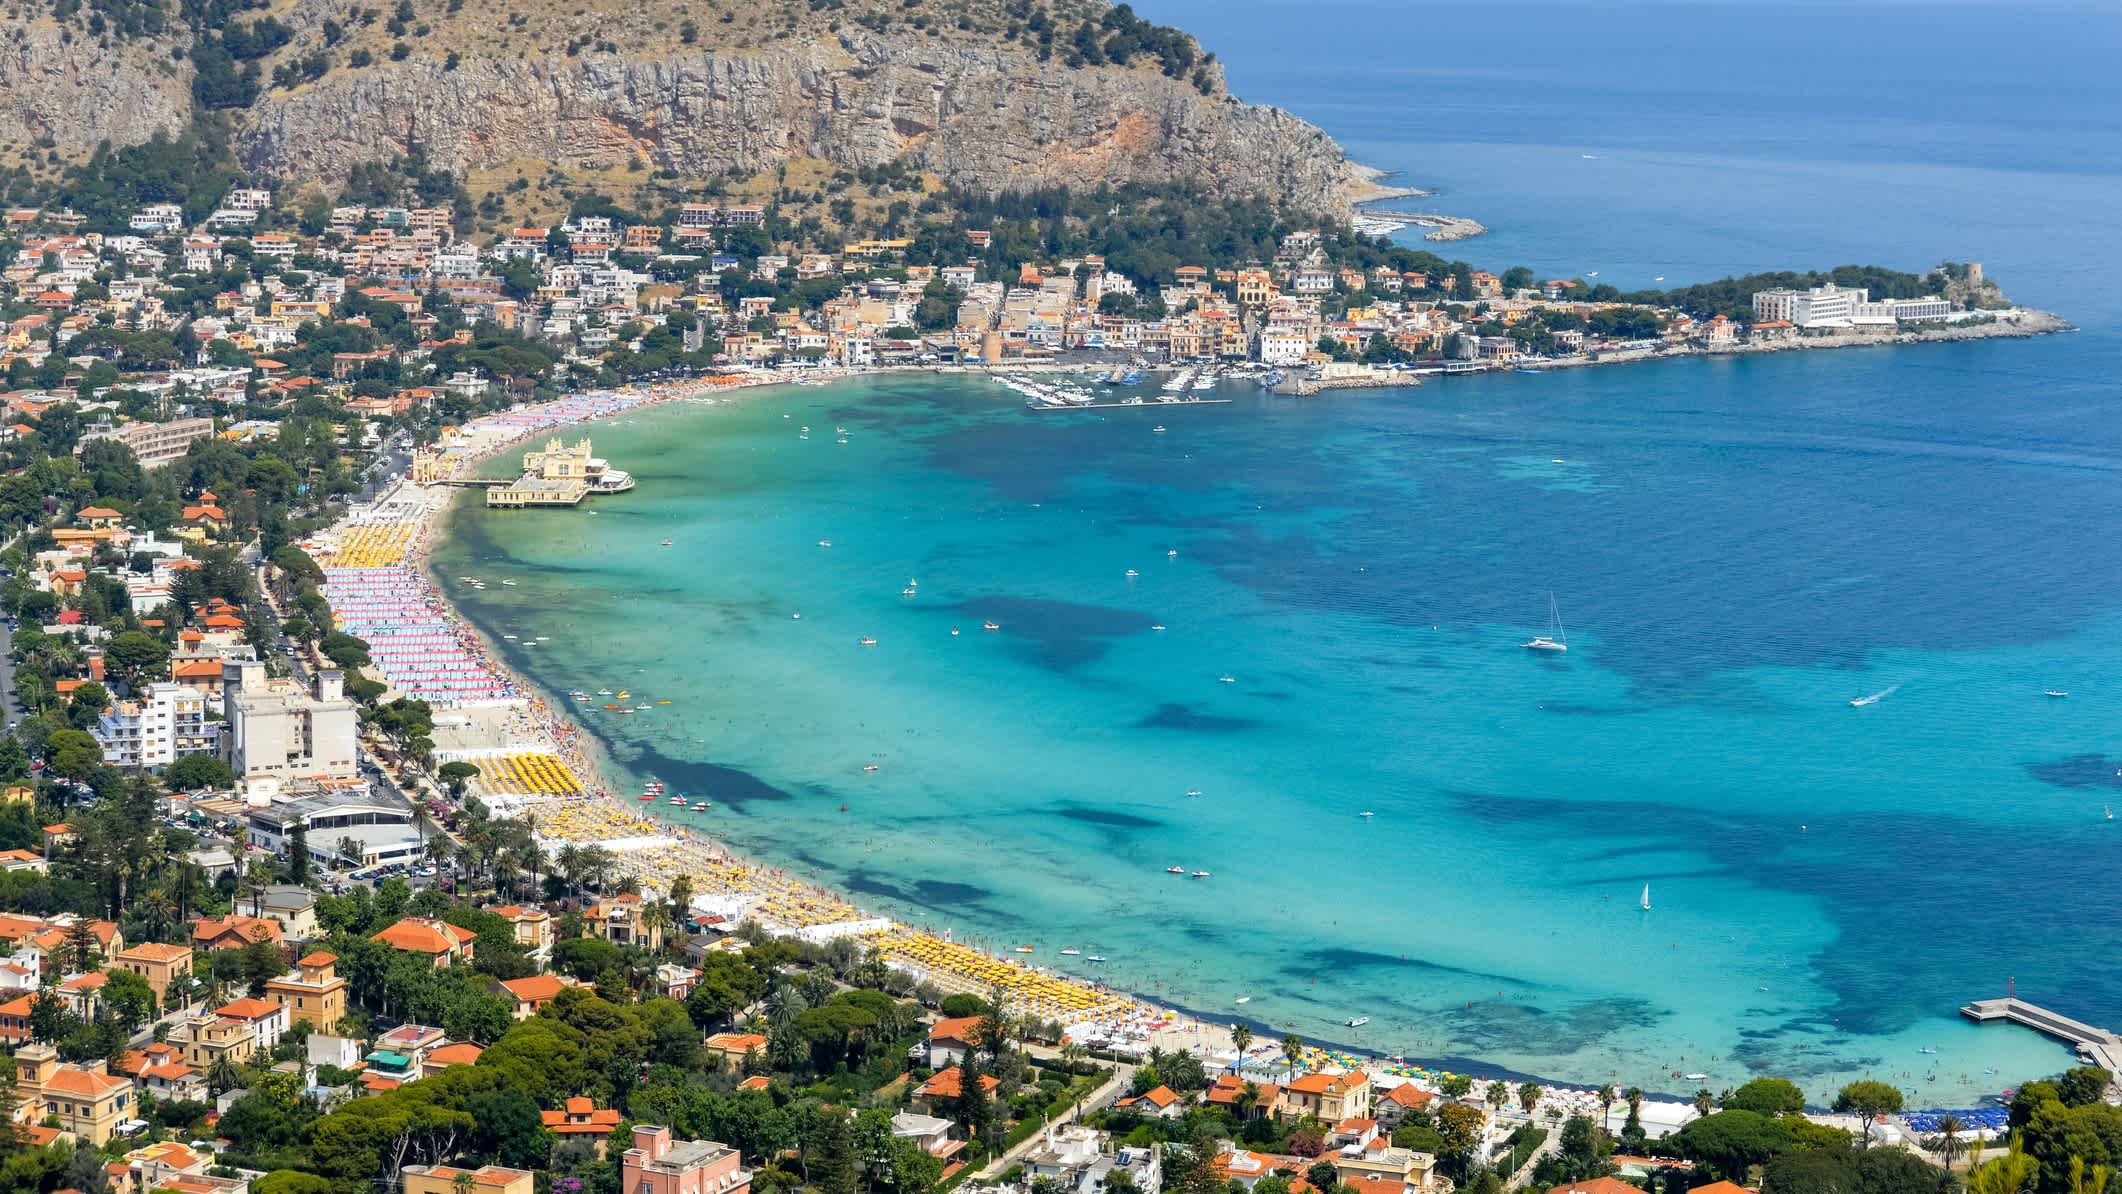 Vue panoramique de la plage de Mondello à Palerme, en Sicile, en Italie.

